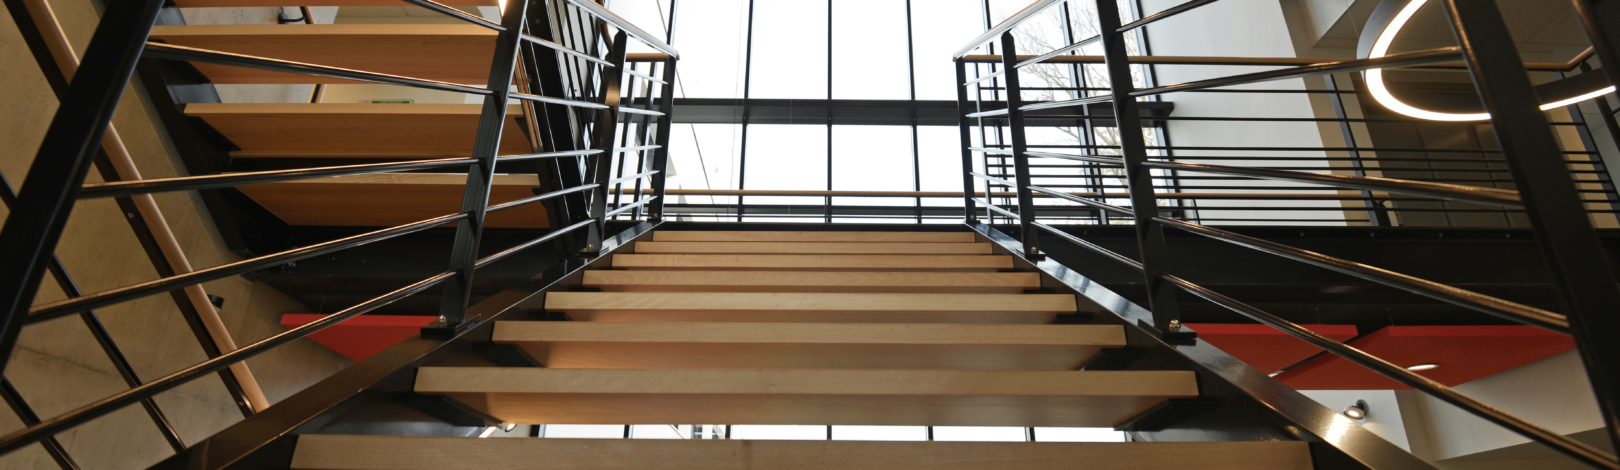 escalier plusieurs niveaux sur mesure acier et bois dans une entreprise